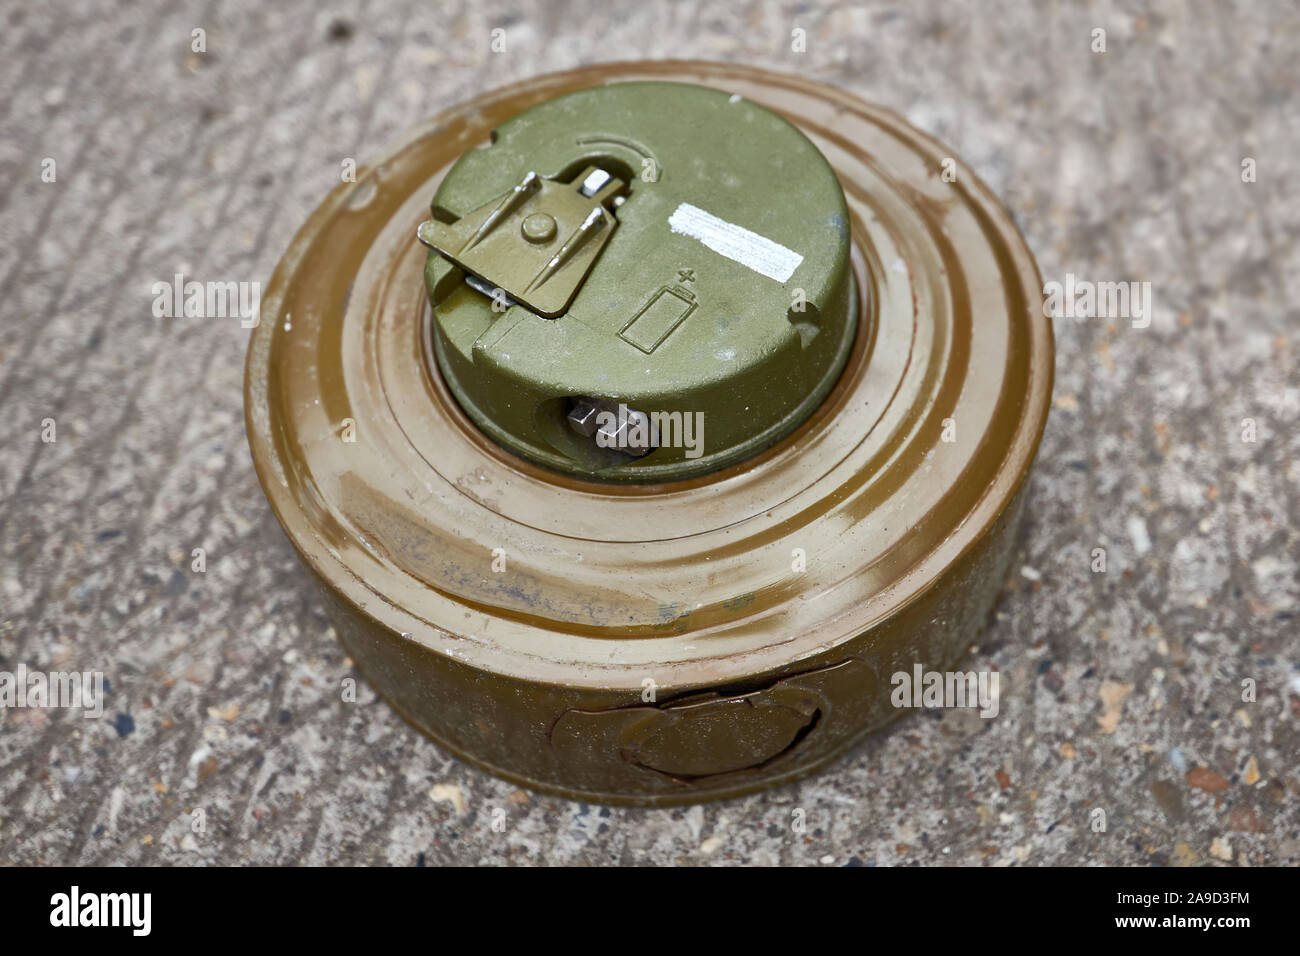 Khaki colour modern anti-tank mine lies on concrete surface. Stock Photo